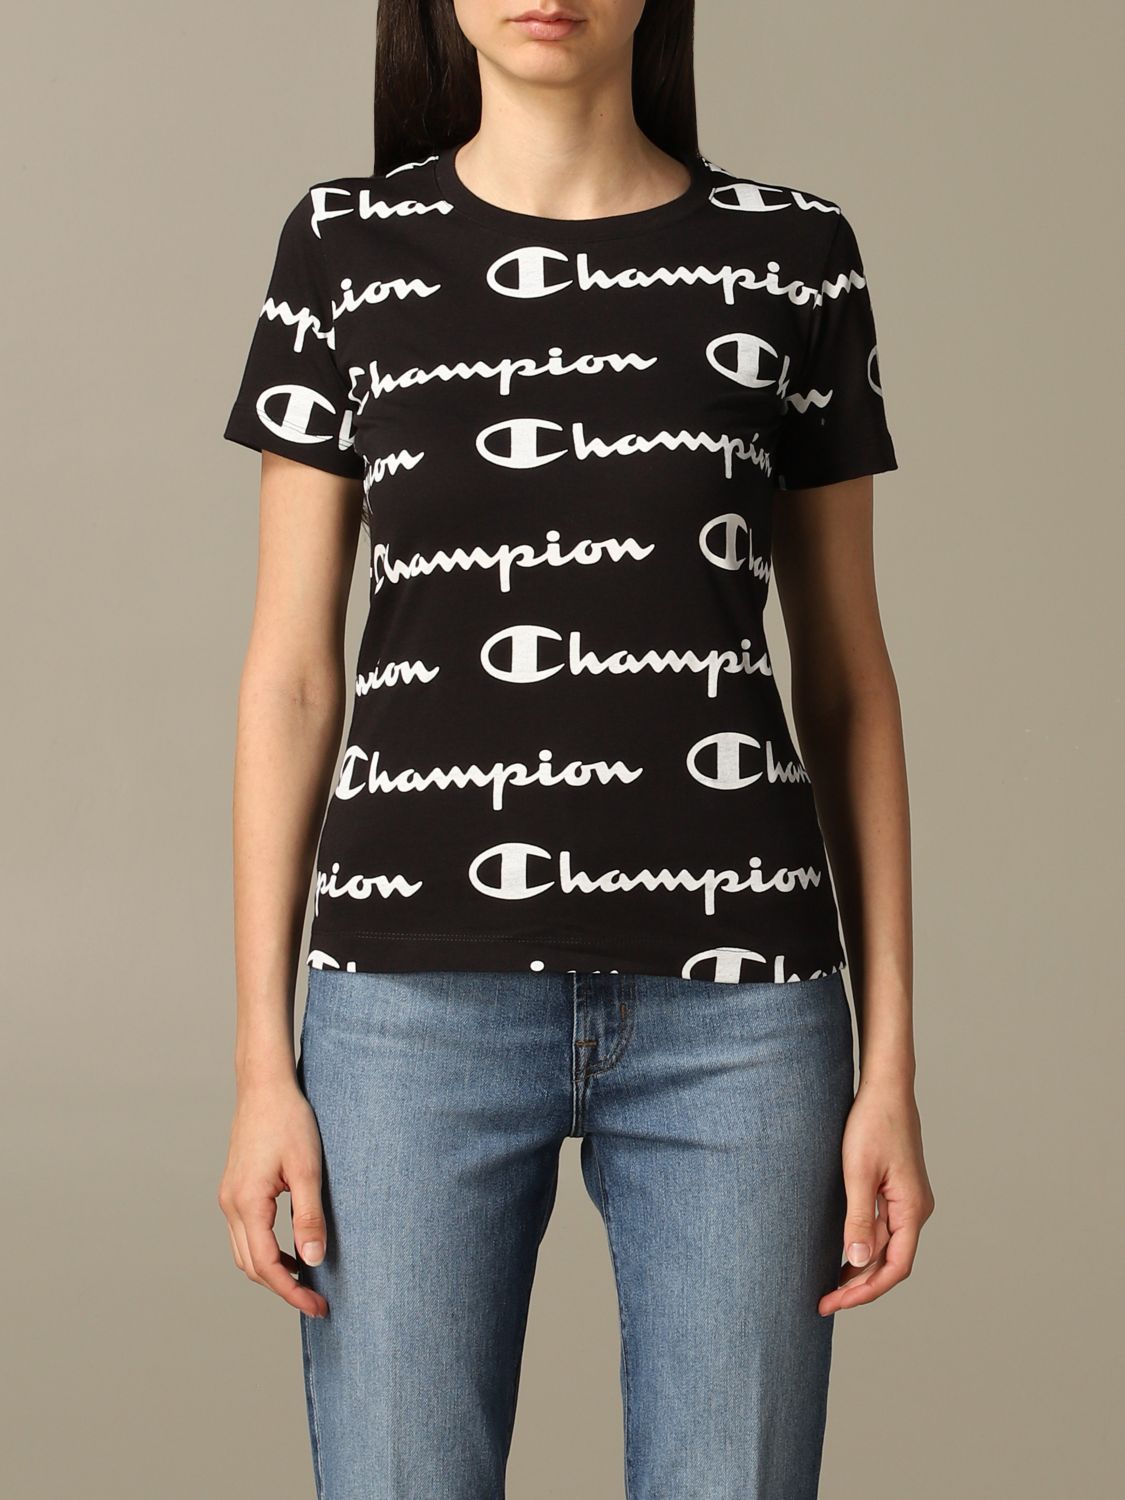 cheap champion shirts womens